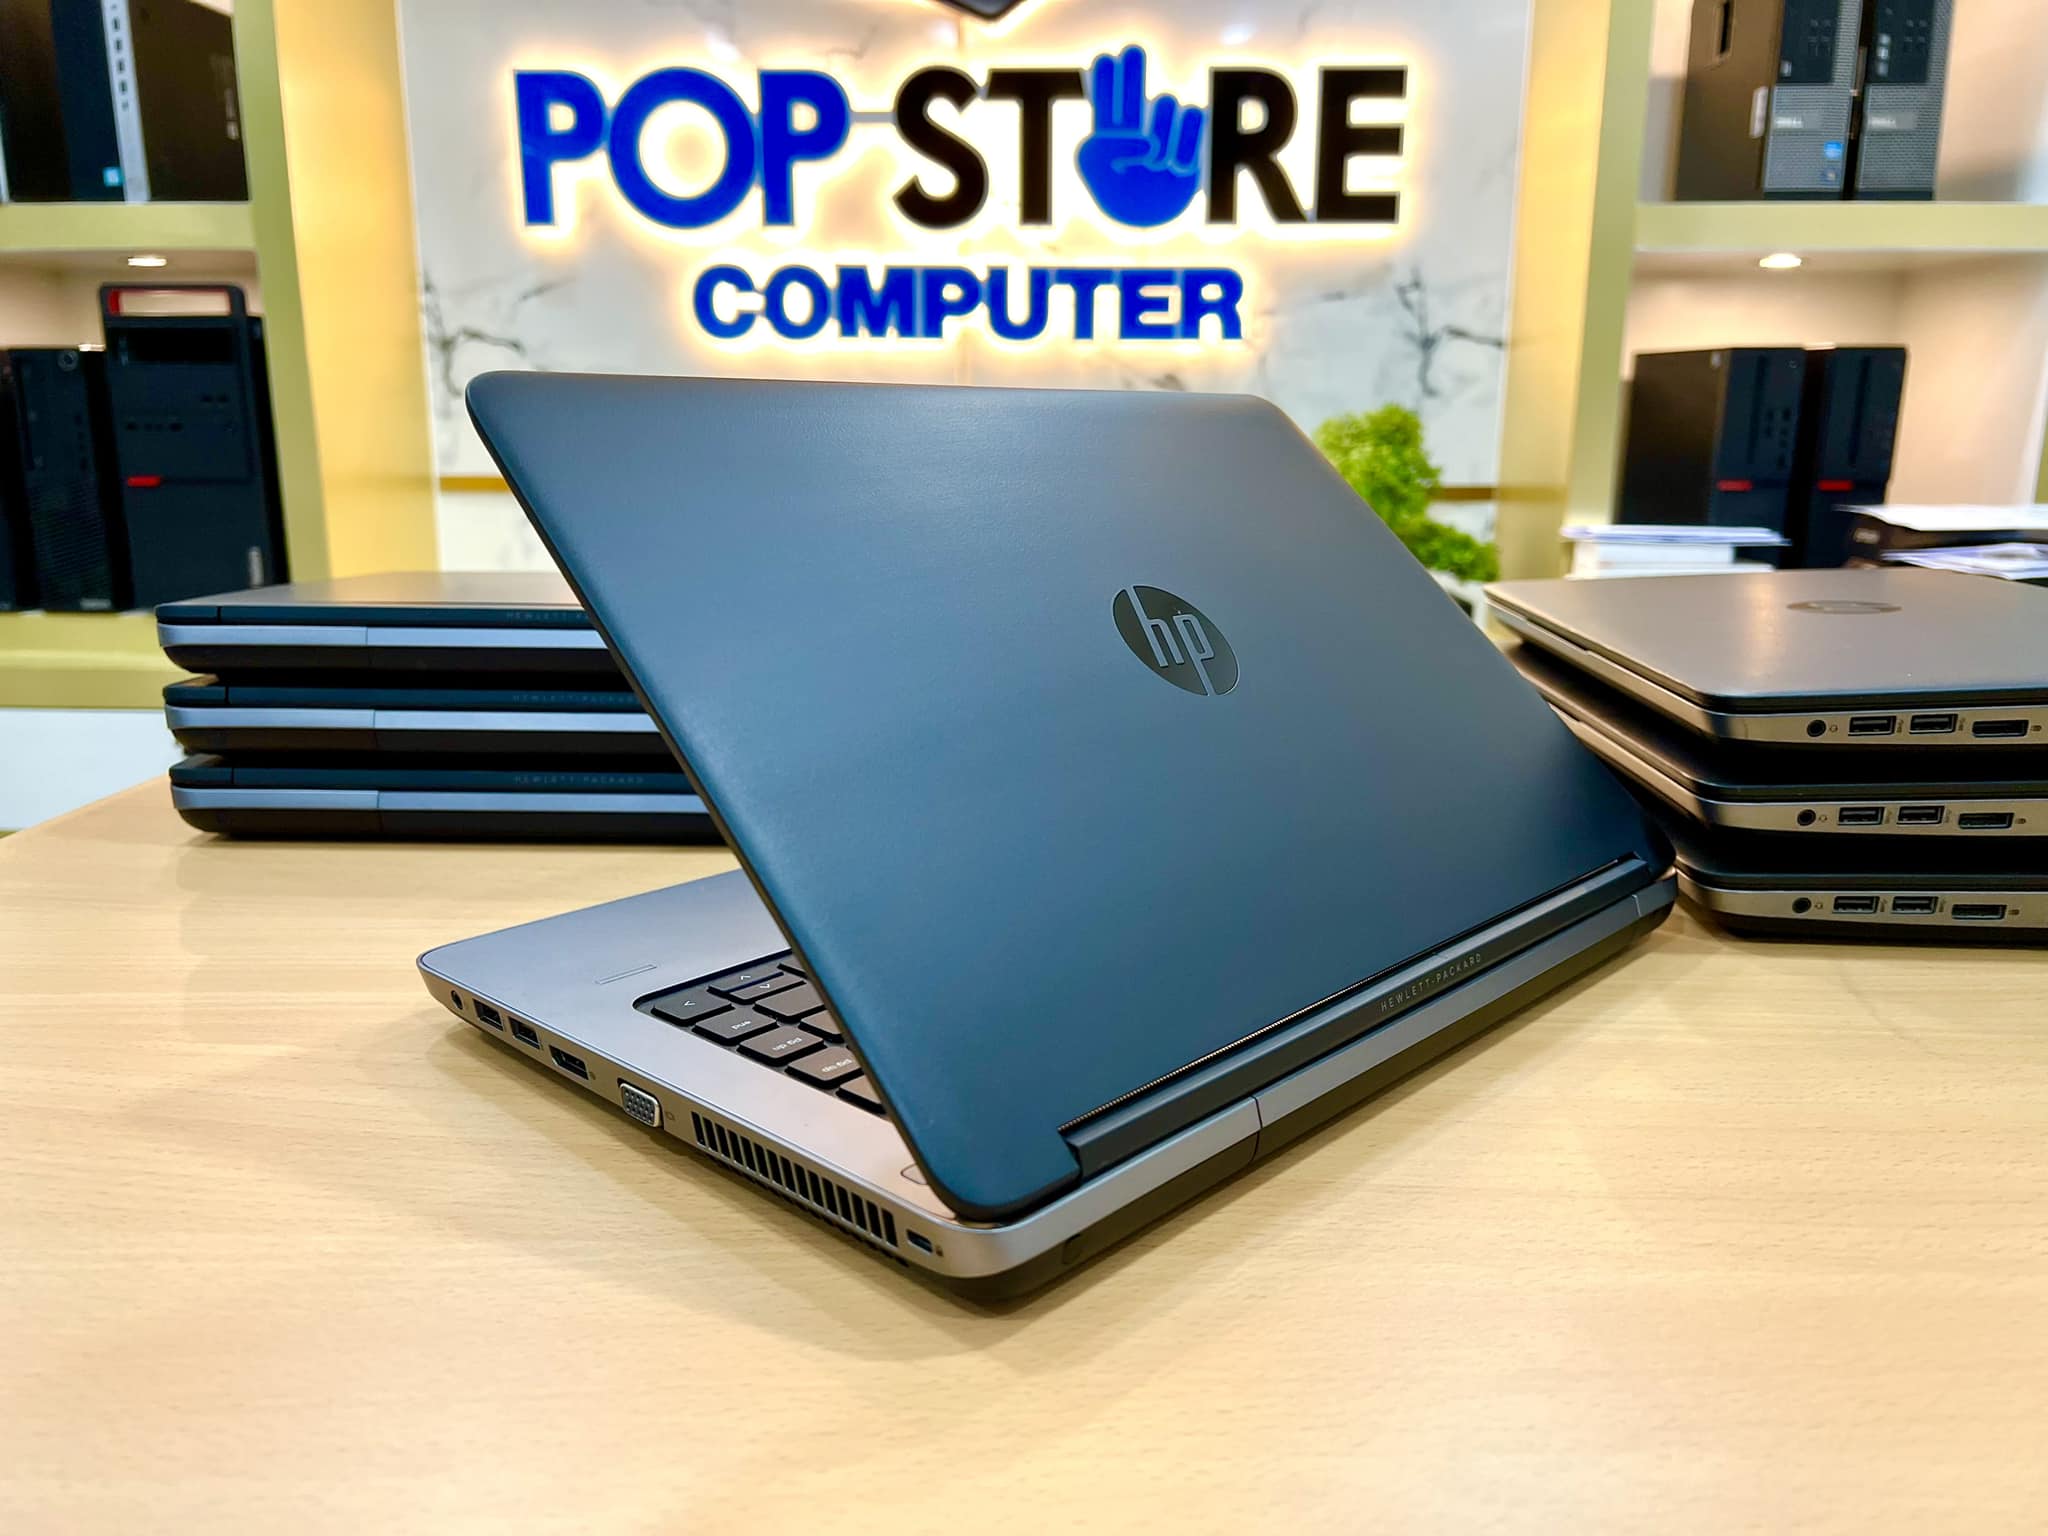 Hp Probook 645 G1 Amd A10 5750m Pop Store Computer 6689